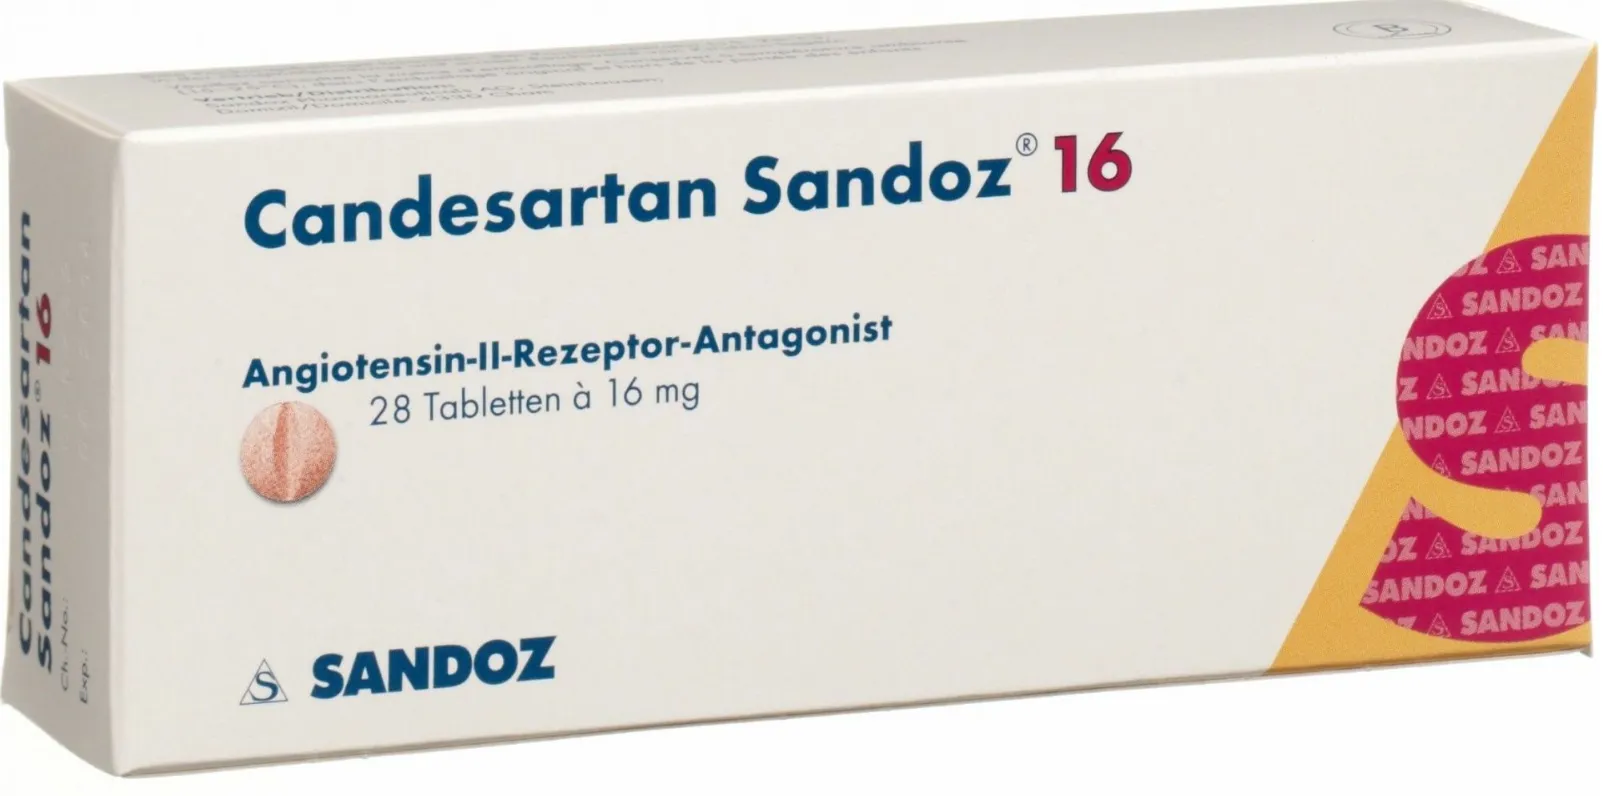 Candesartan 16mg, 28 comprimate, Sandoz